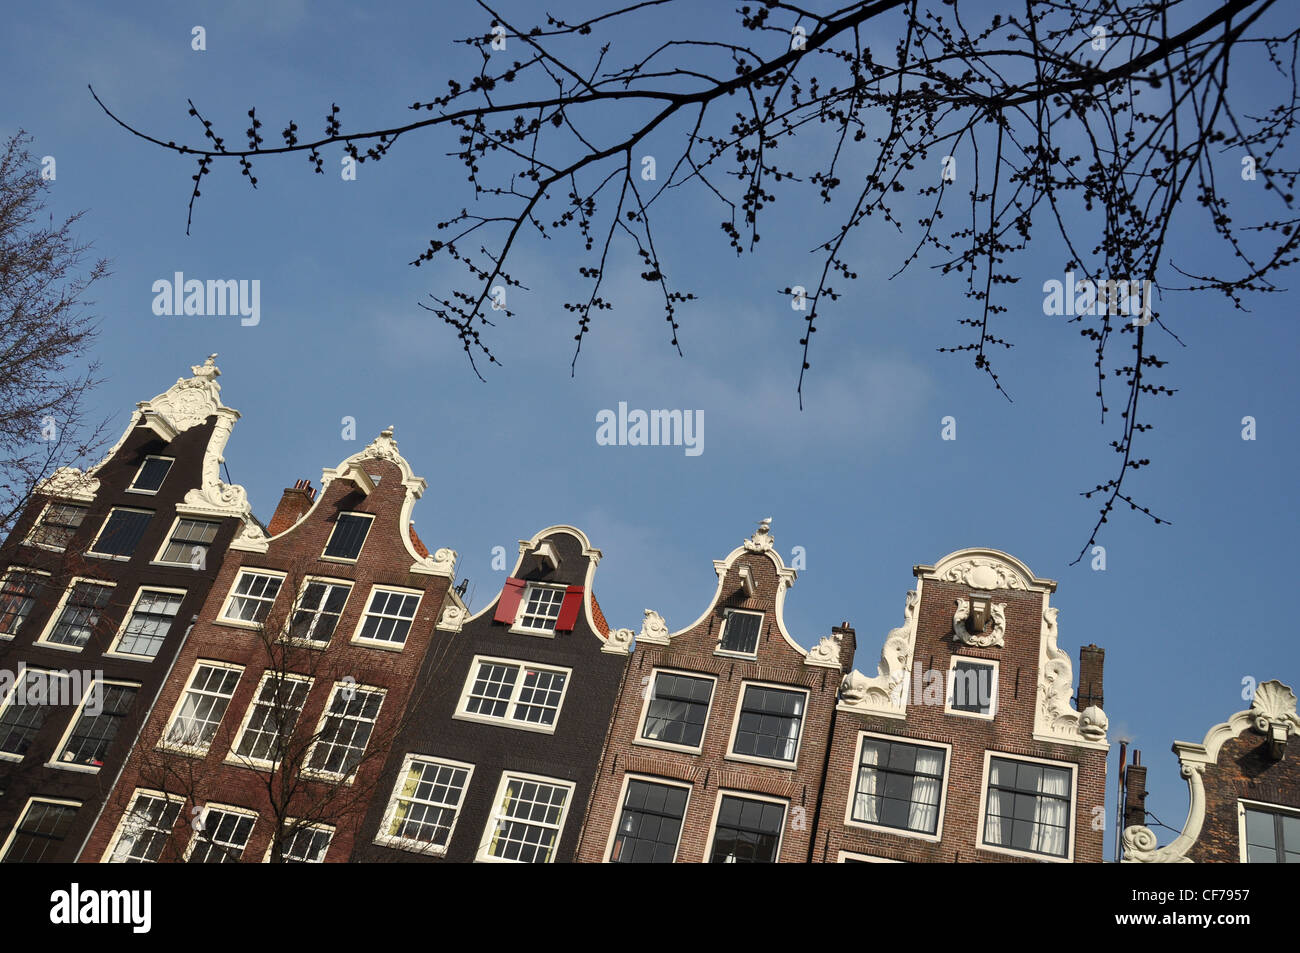 L'étape pignons de maisons du canal à Amsterdam. Hollande, Pays-Bas, Europe Banque D'Images